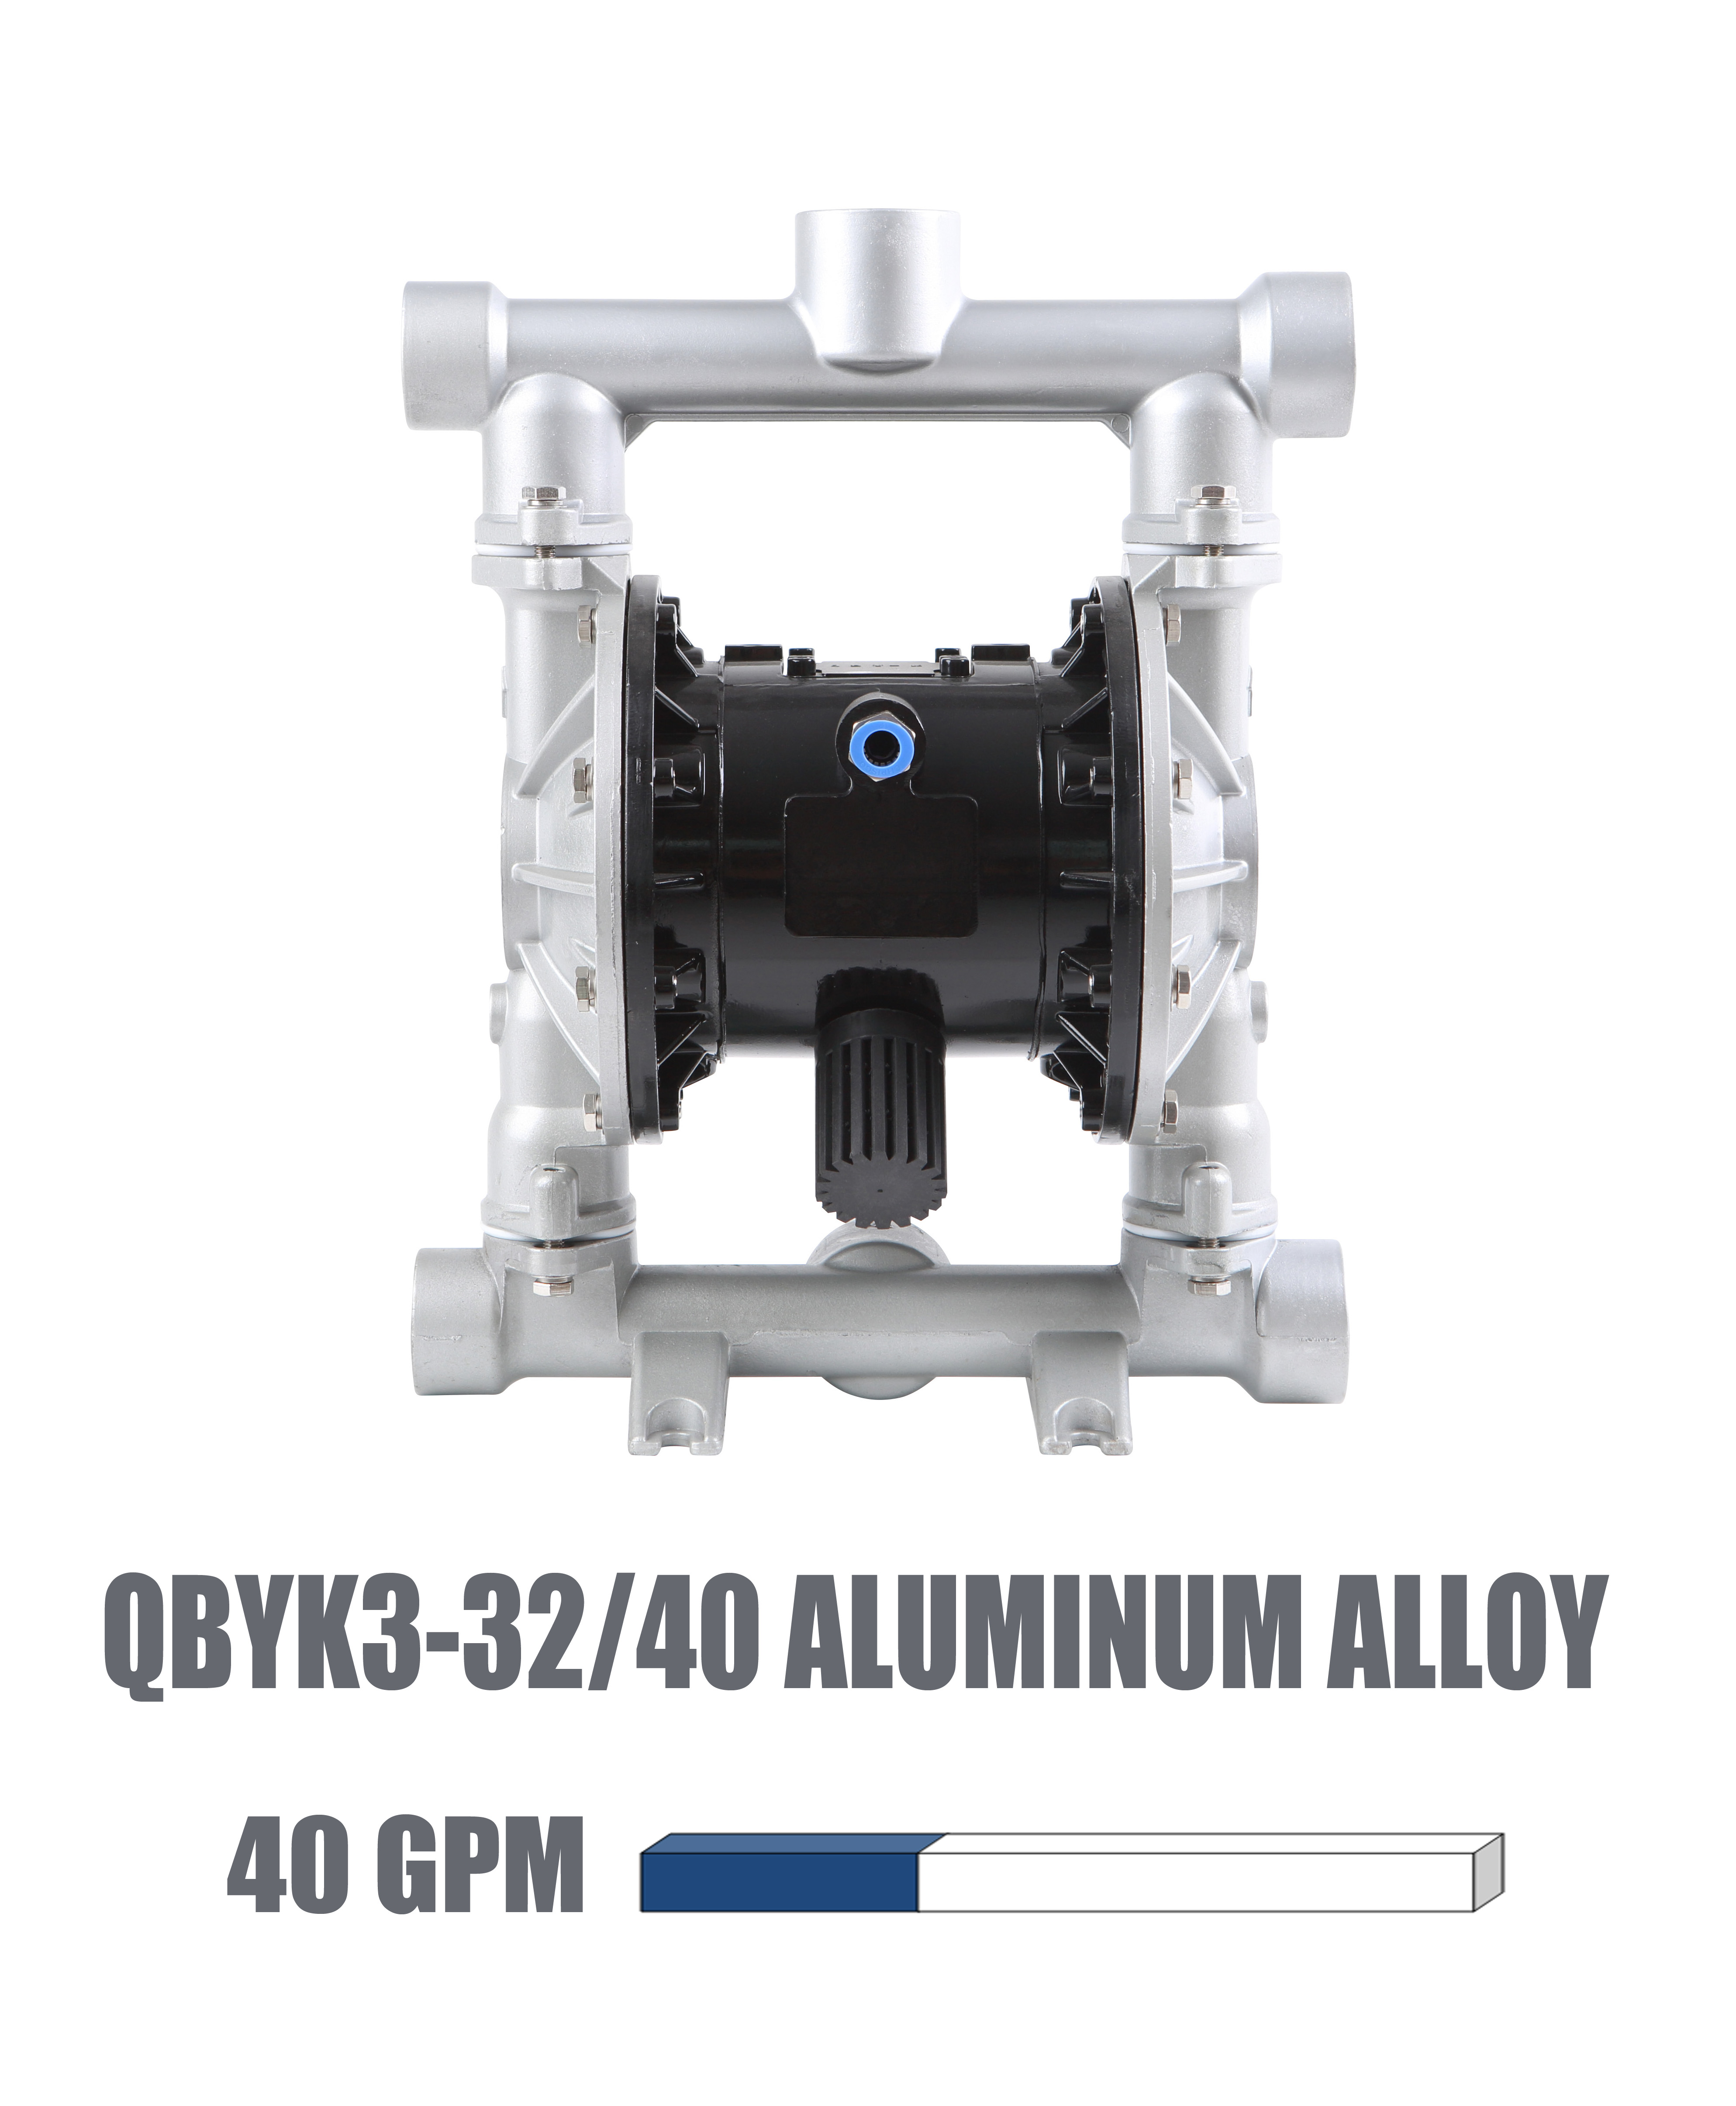 QBYK3-32/40 Aluminum alloy